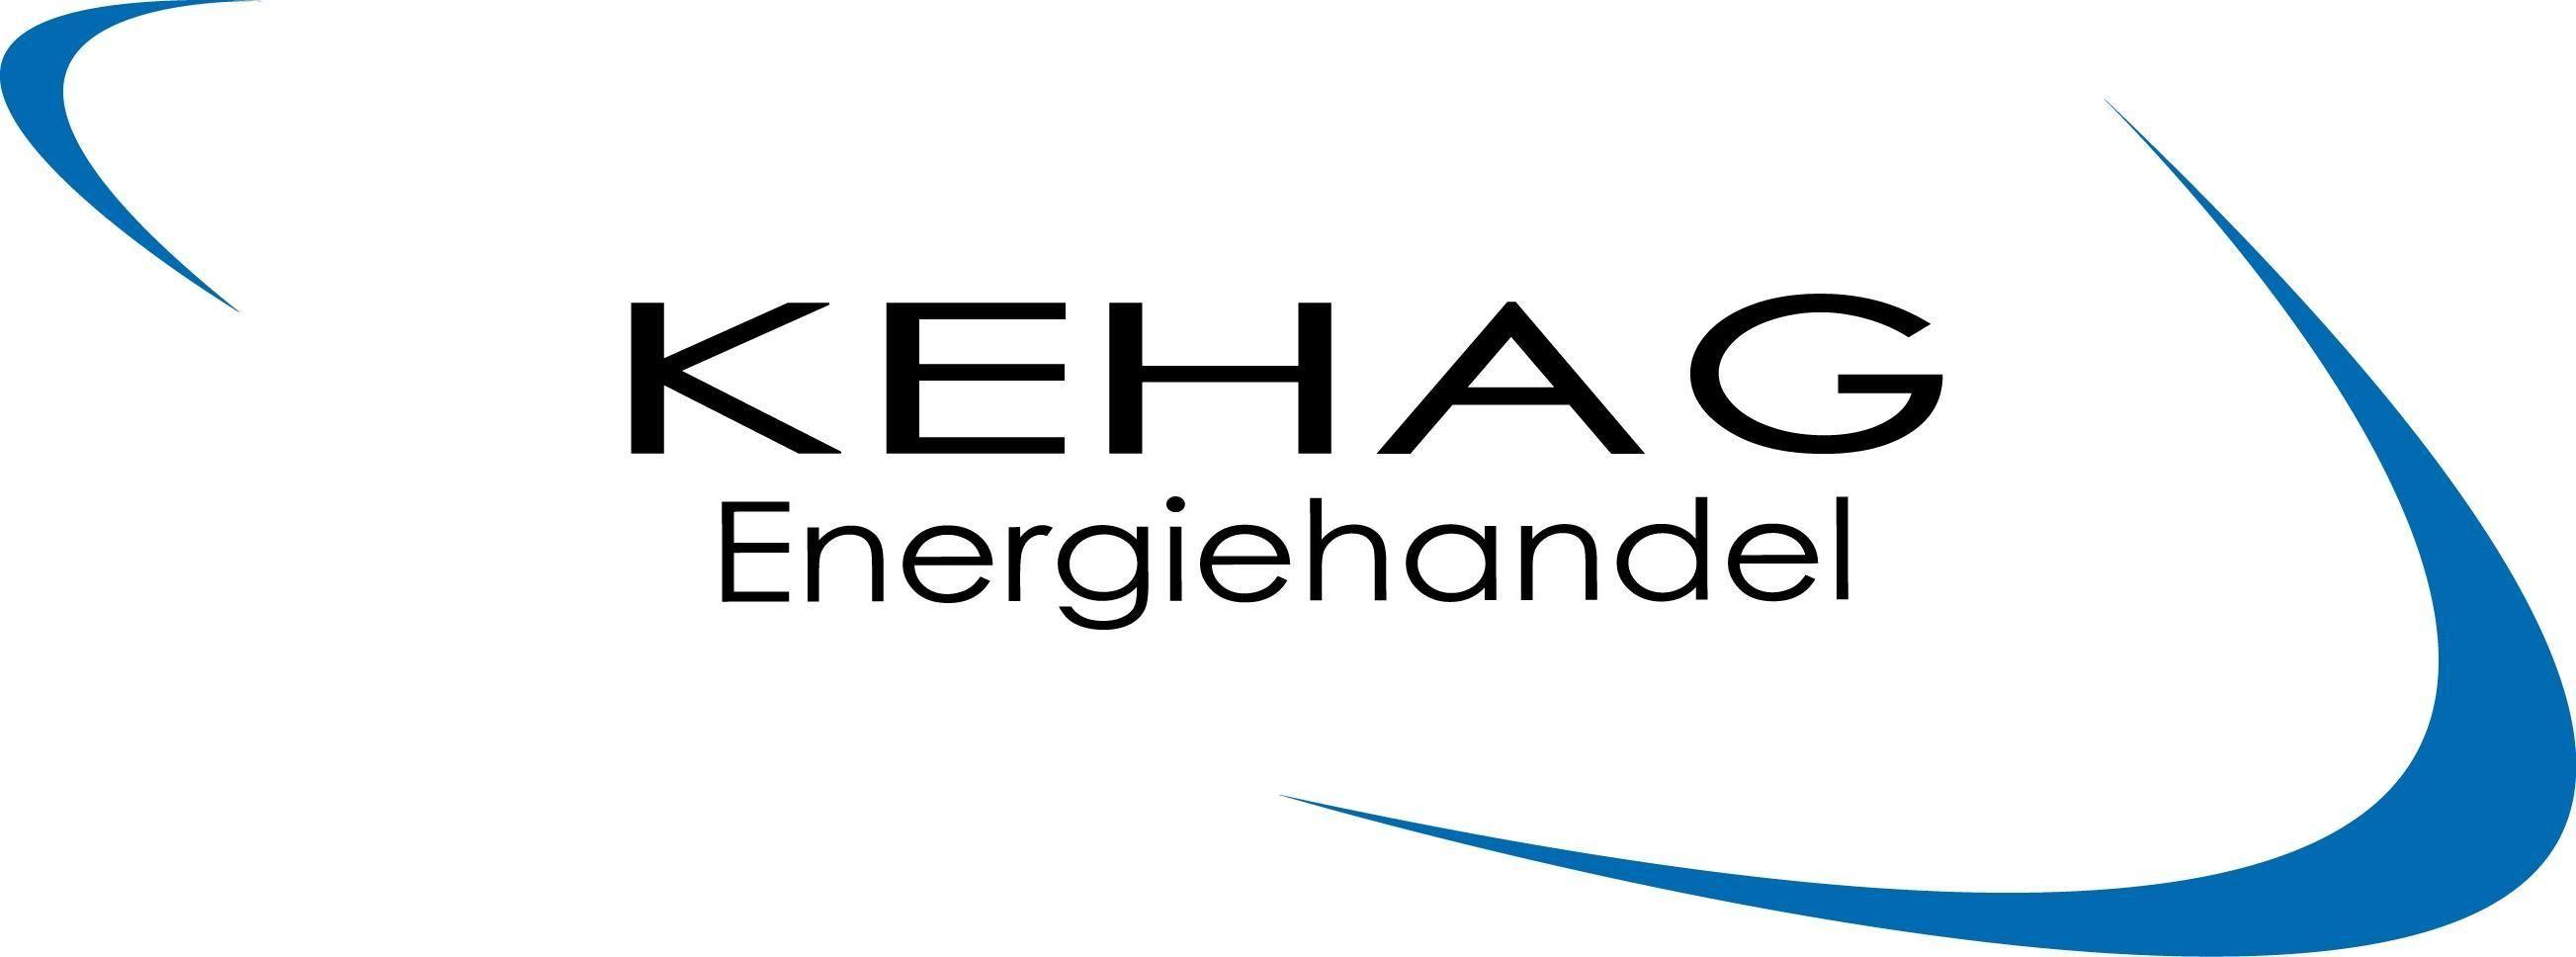 Keh Logo - File:Logo KEHAG-Energiehandel.jpg - Wikimedia Commons